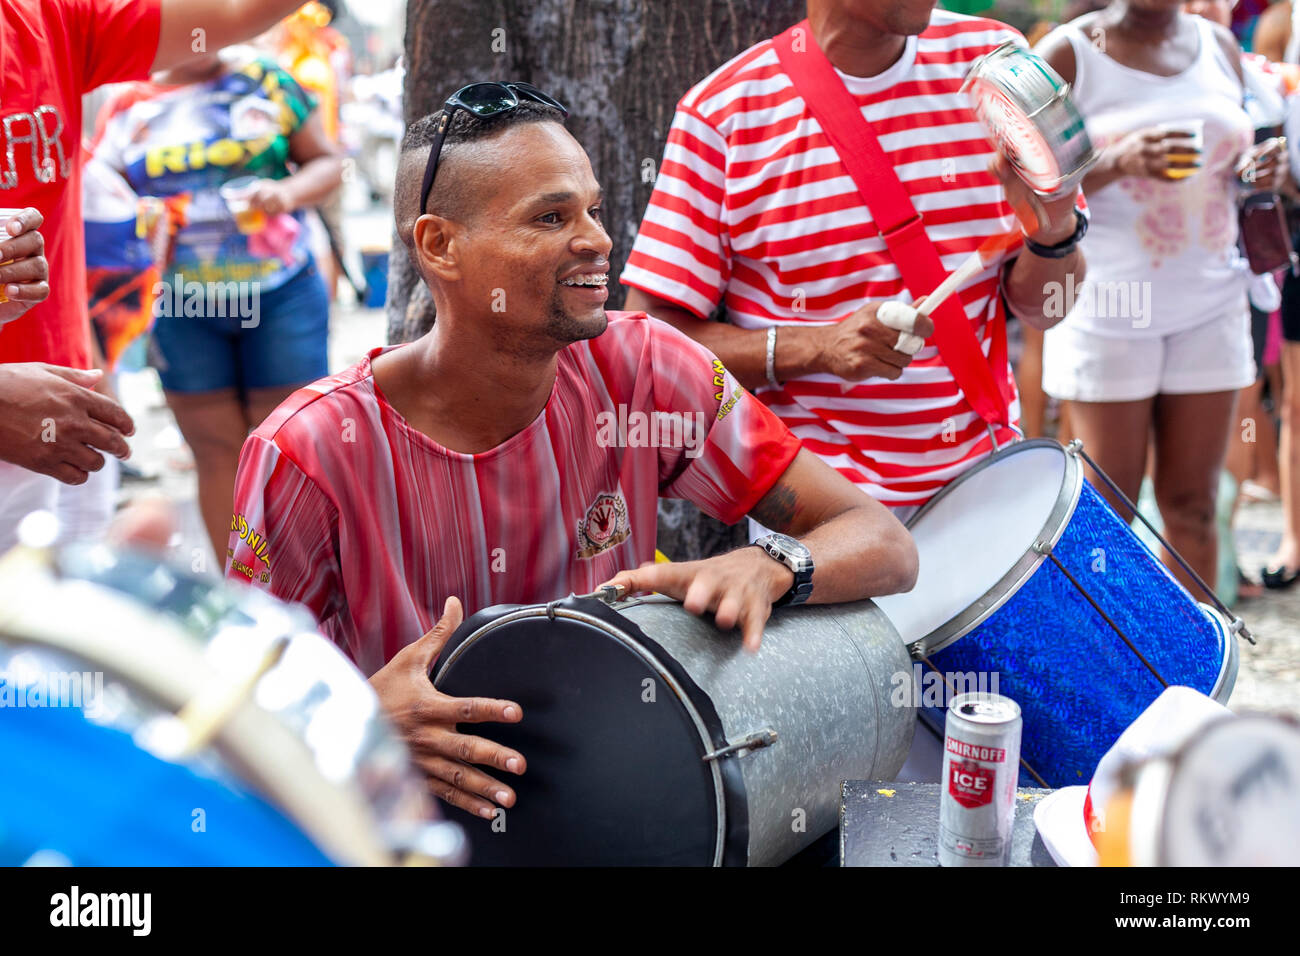 Batteur Samba parmi d'autres musiciens lors d'un carnaval fête de quartier dans le centre-ville de Rio de Janeiro Banque D'Images